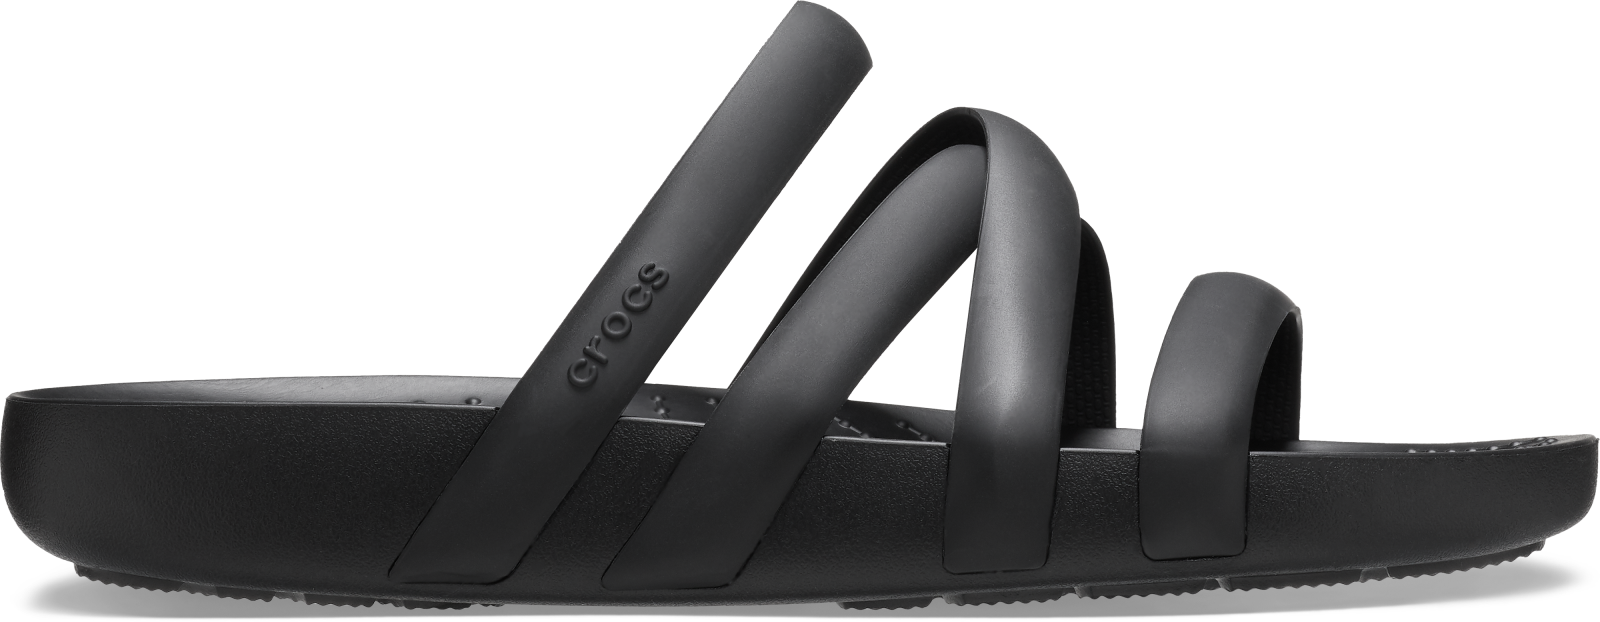 Dámské sandále crocs splash strappy černá 38-39